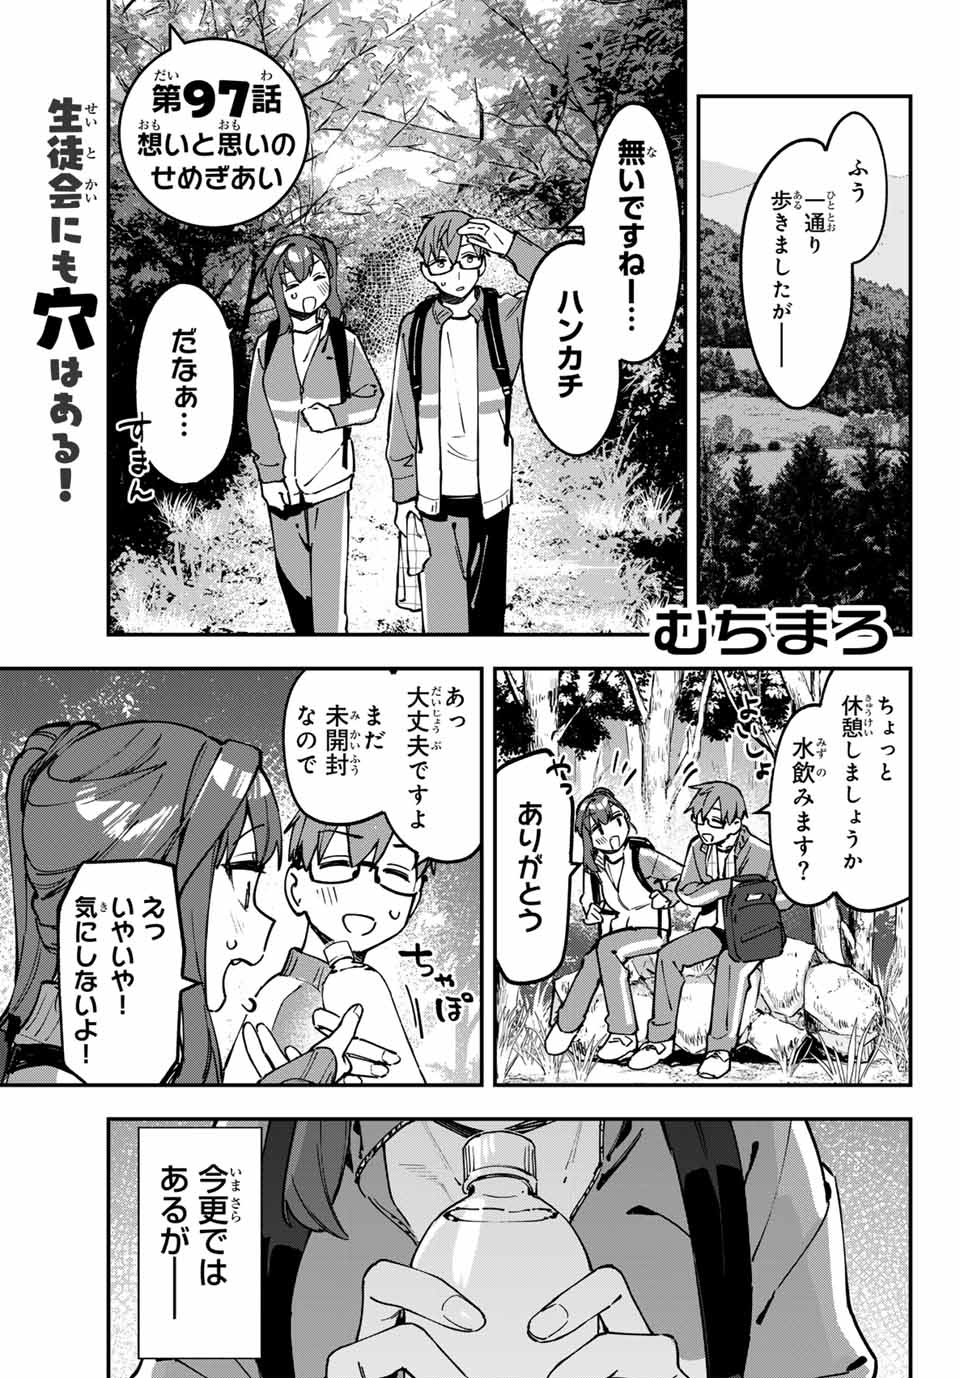 Seitokai mi mo Ana wa Aru! - Chapter 97 - Page 1